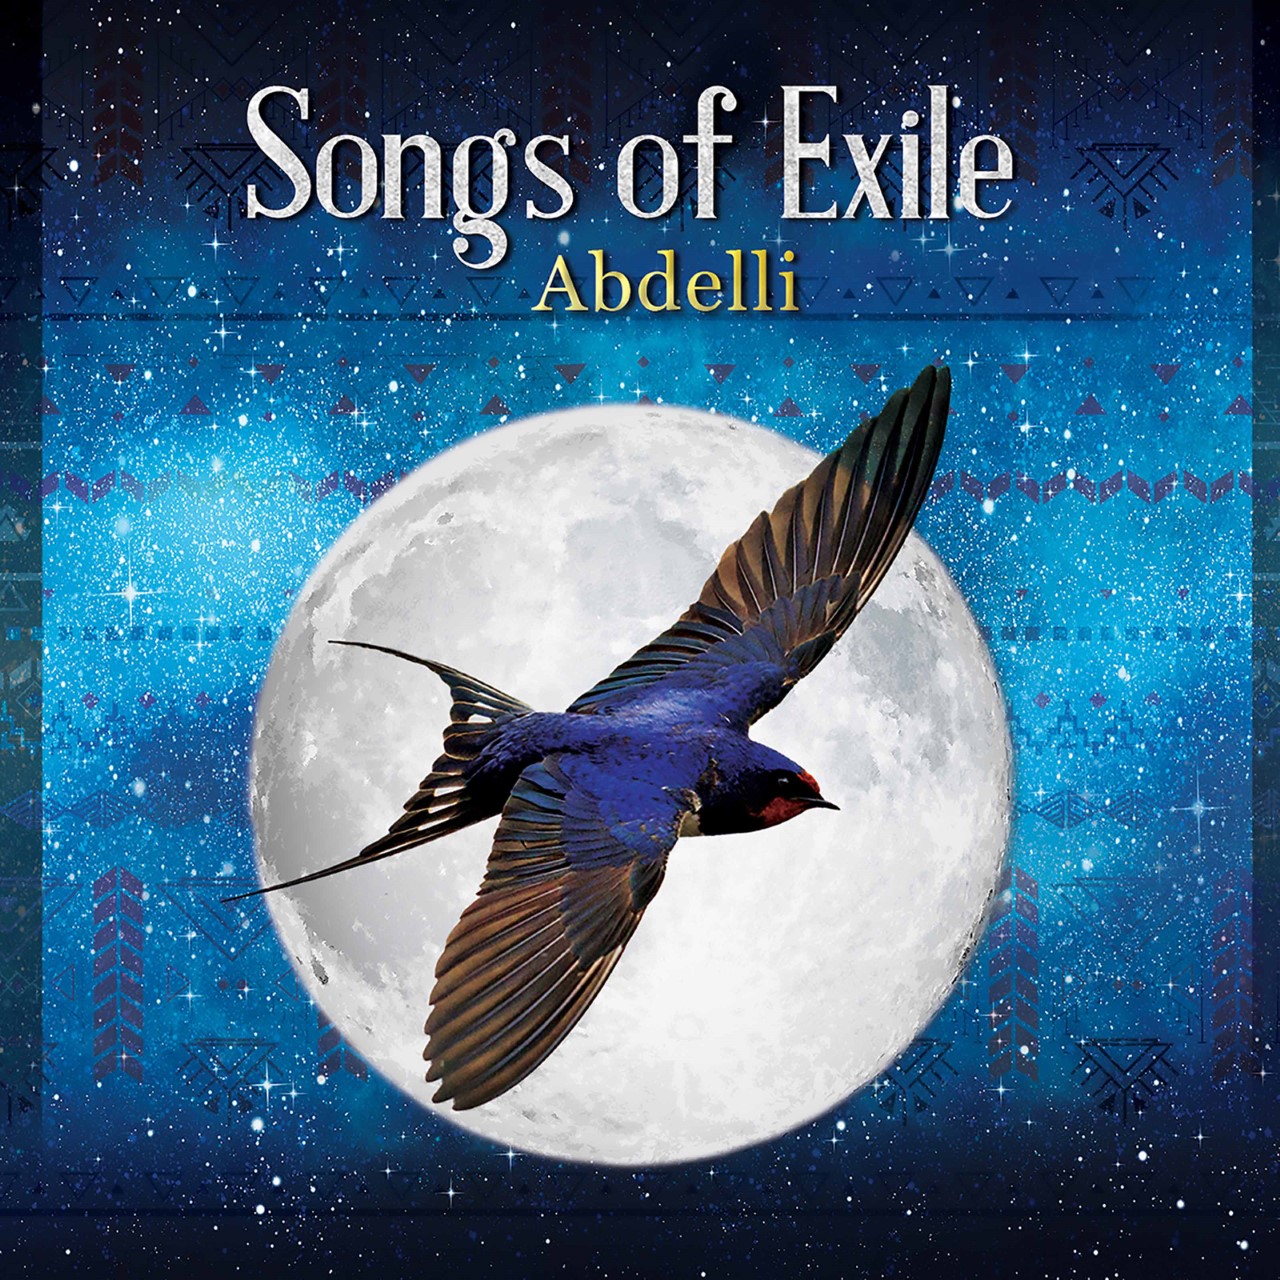 Cover des Albums "Songs of exile" (herausgegeben von ARC Music)